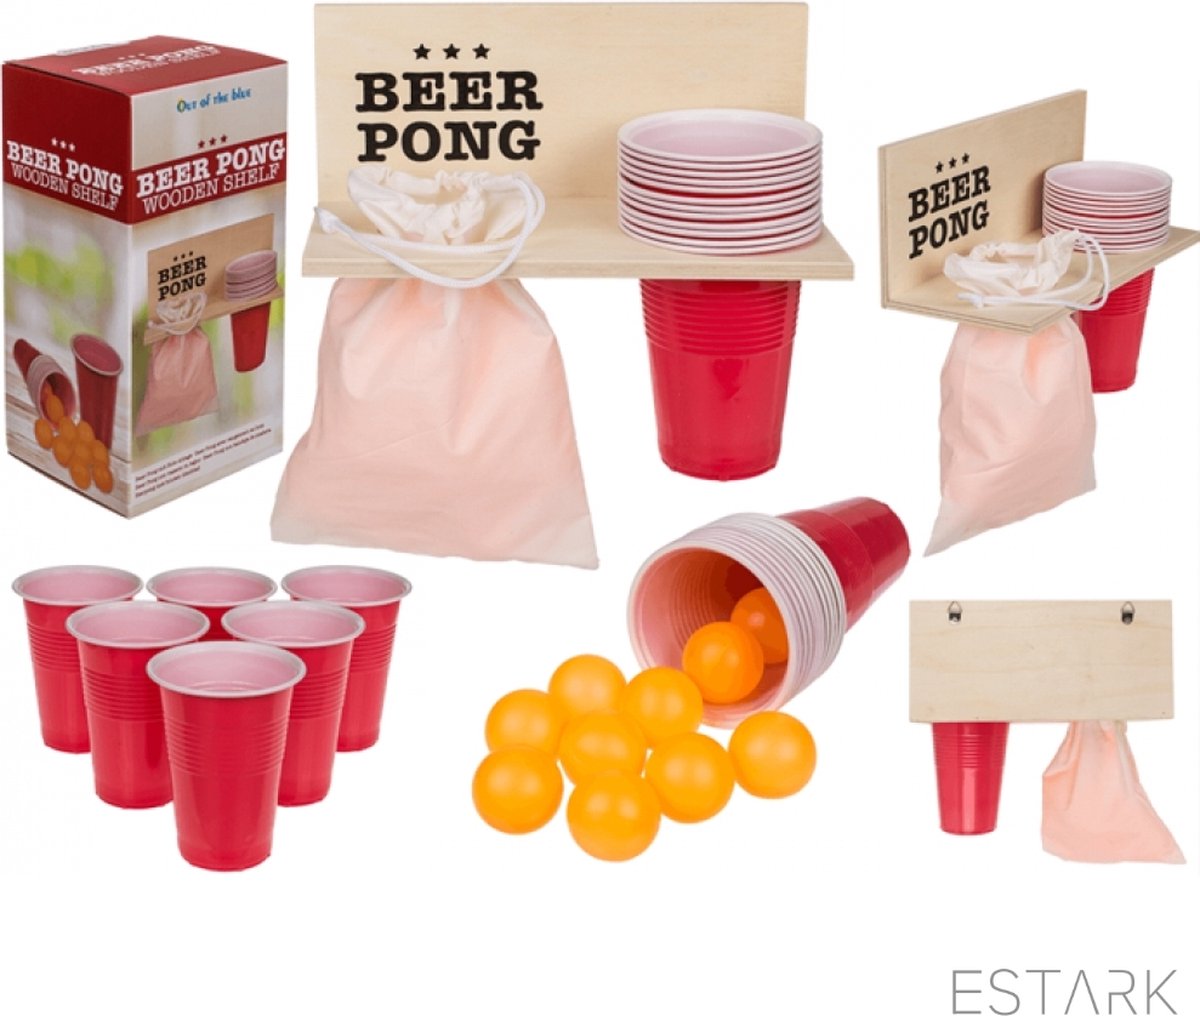 Ambiancer une fête avec le jeu beer pong - Utile et pratique